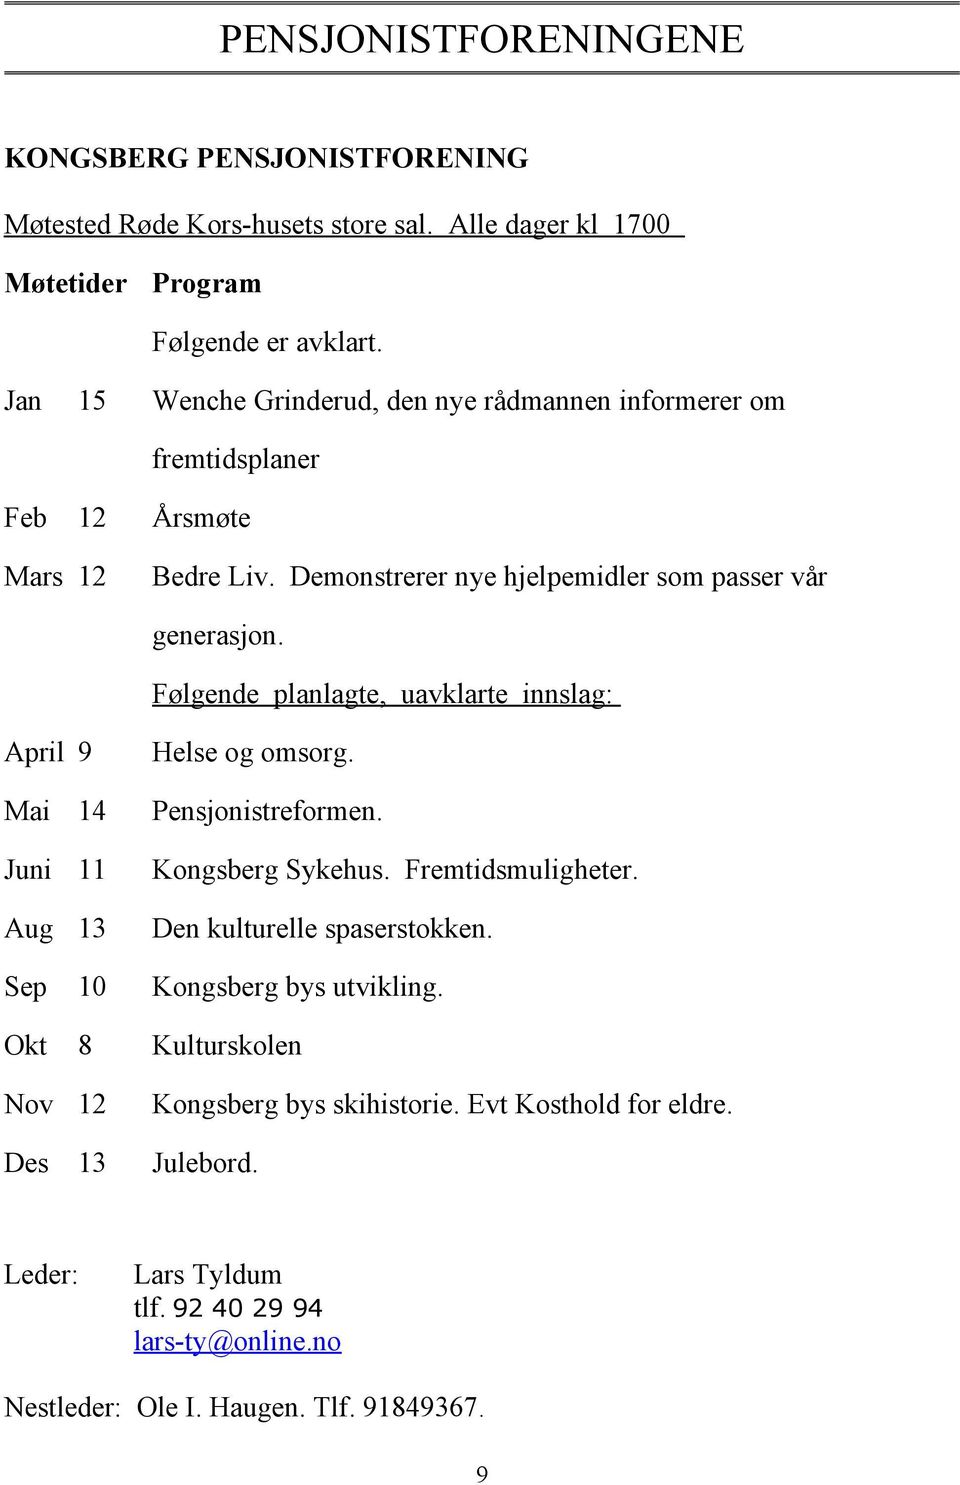 Følgende planlagte, uavklarte innslag: April 9 Helse og omsorg. Mai 14 Pensjonistreformen. Juni 11 Kongsberg Sykehus. Fremtidsmuligheter. Aug 13 Den kulturelle spaserstokken.